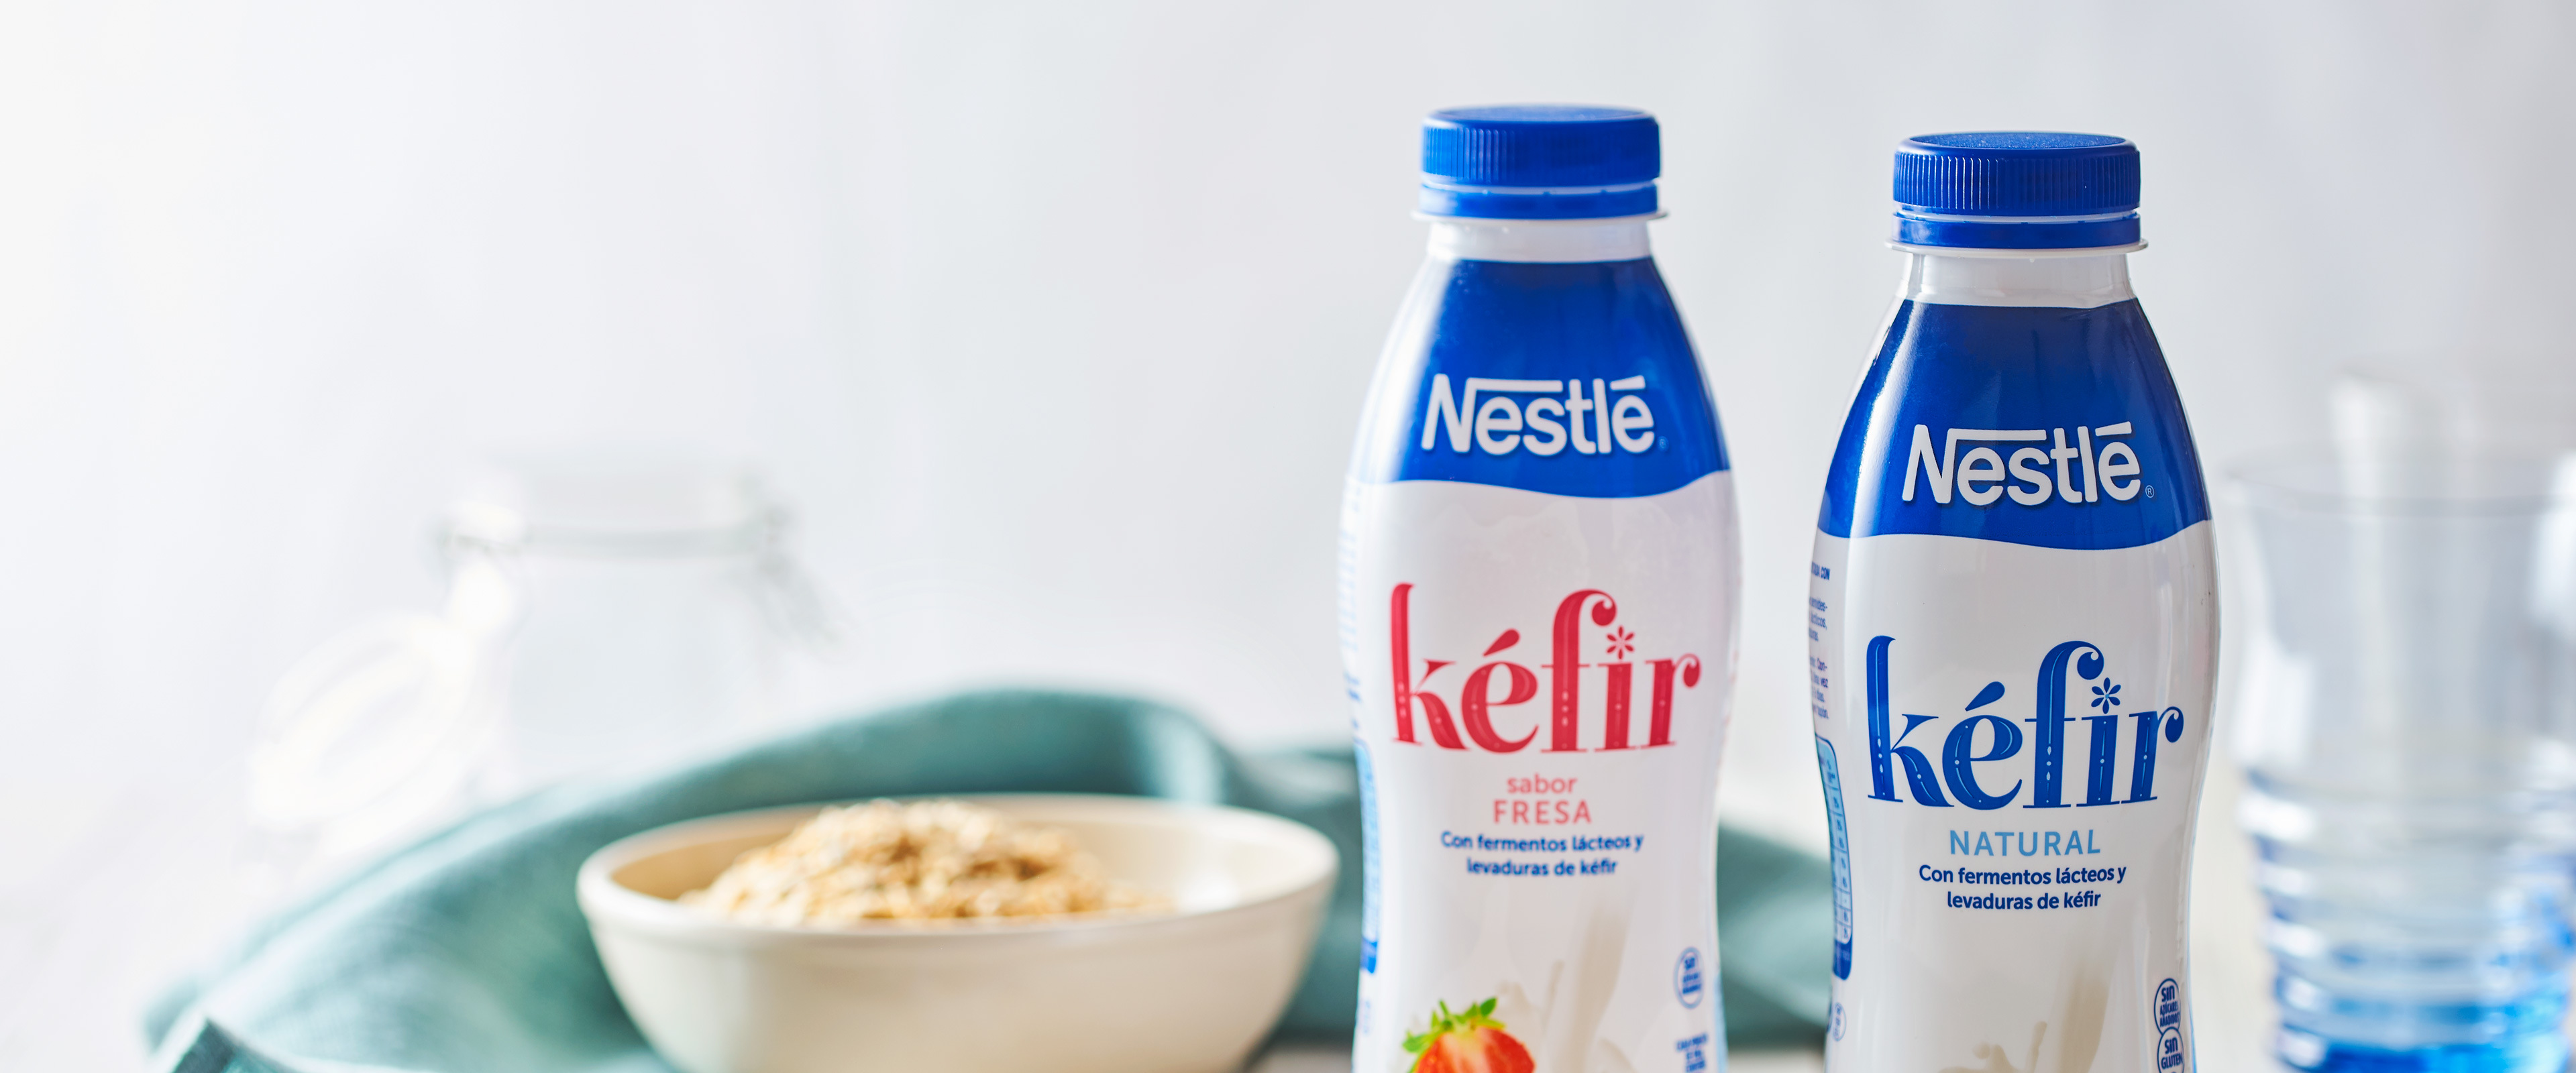 Quefir Nestlé, un producte tradicional per a una marca global